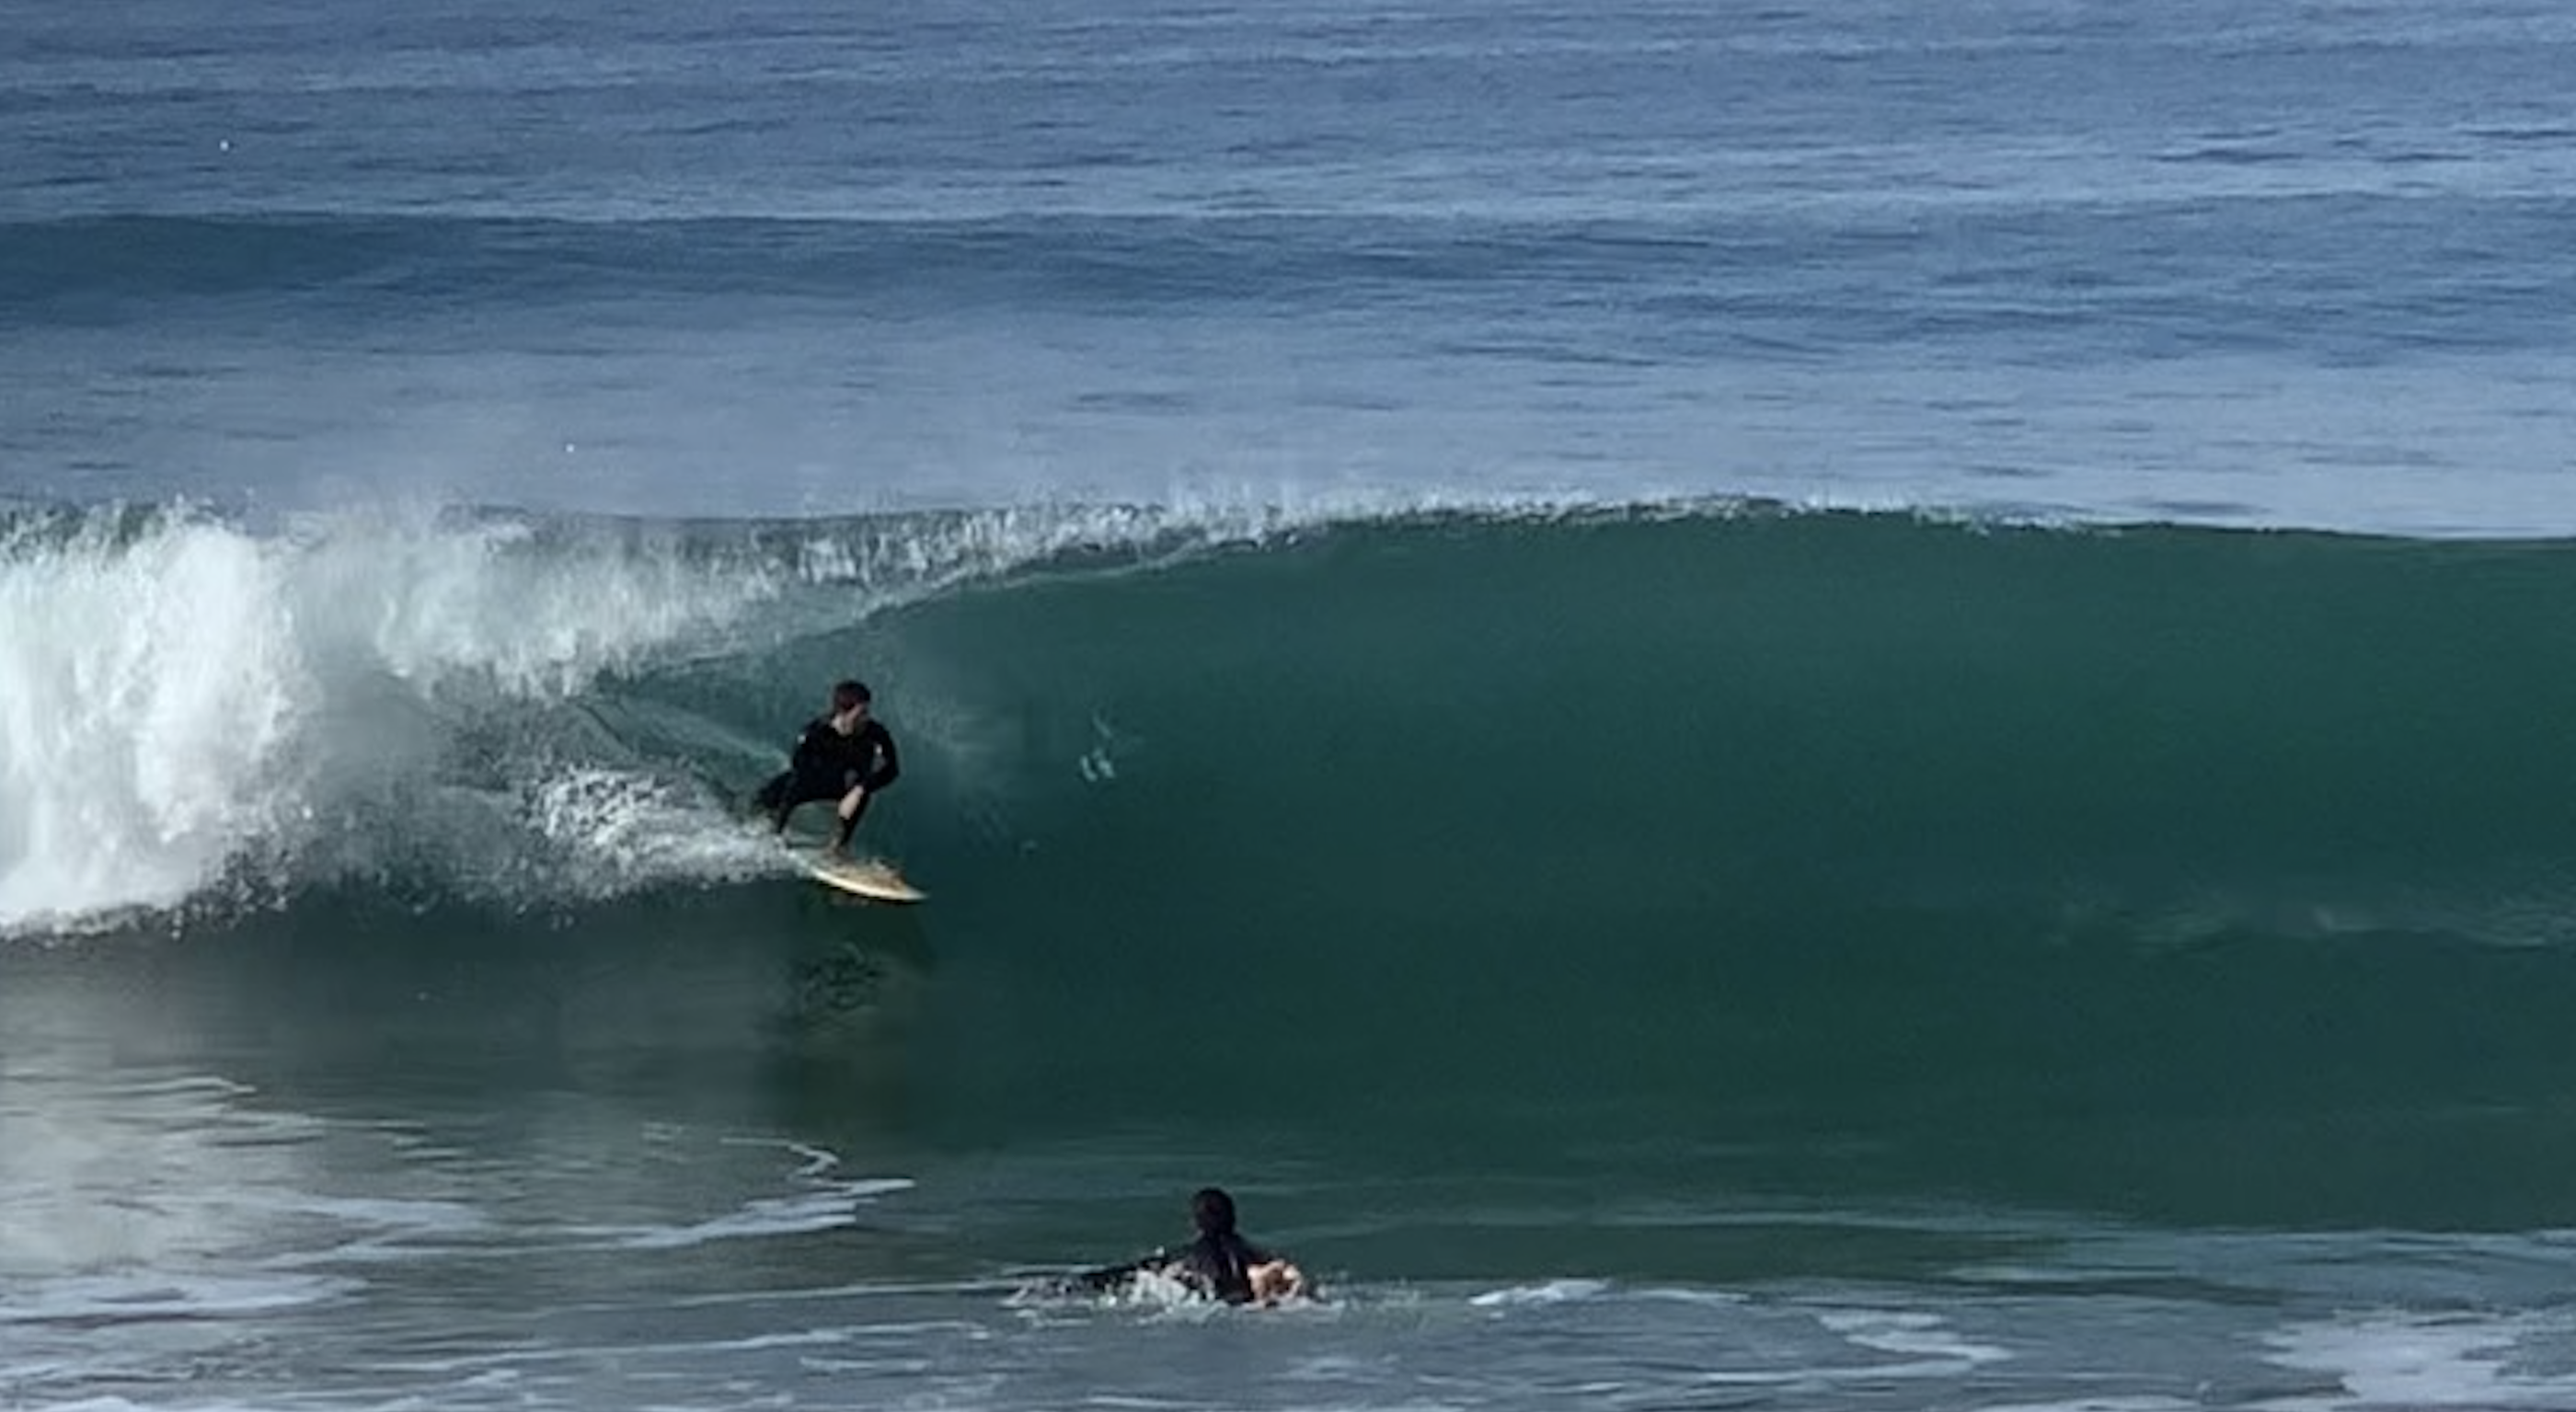 Teagan surfing in Laguna Beach